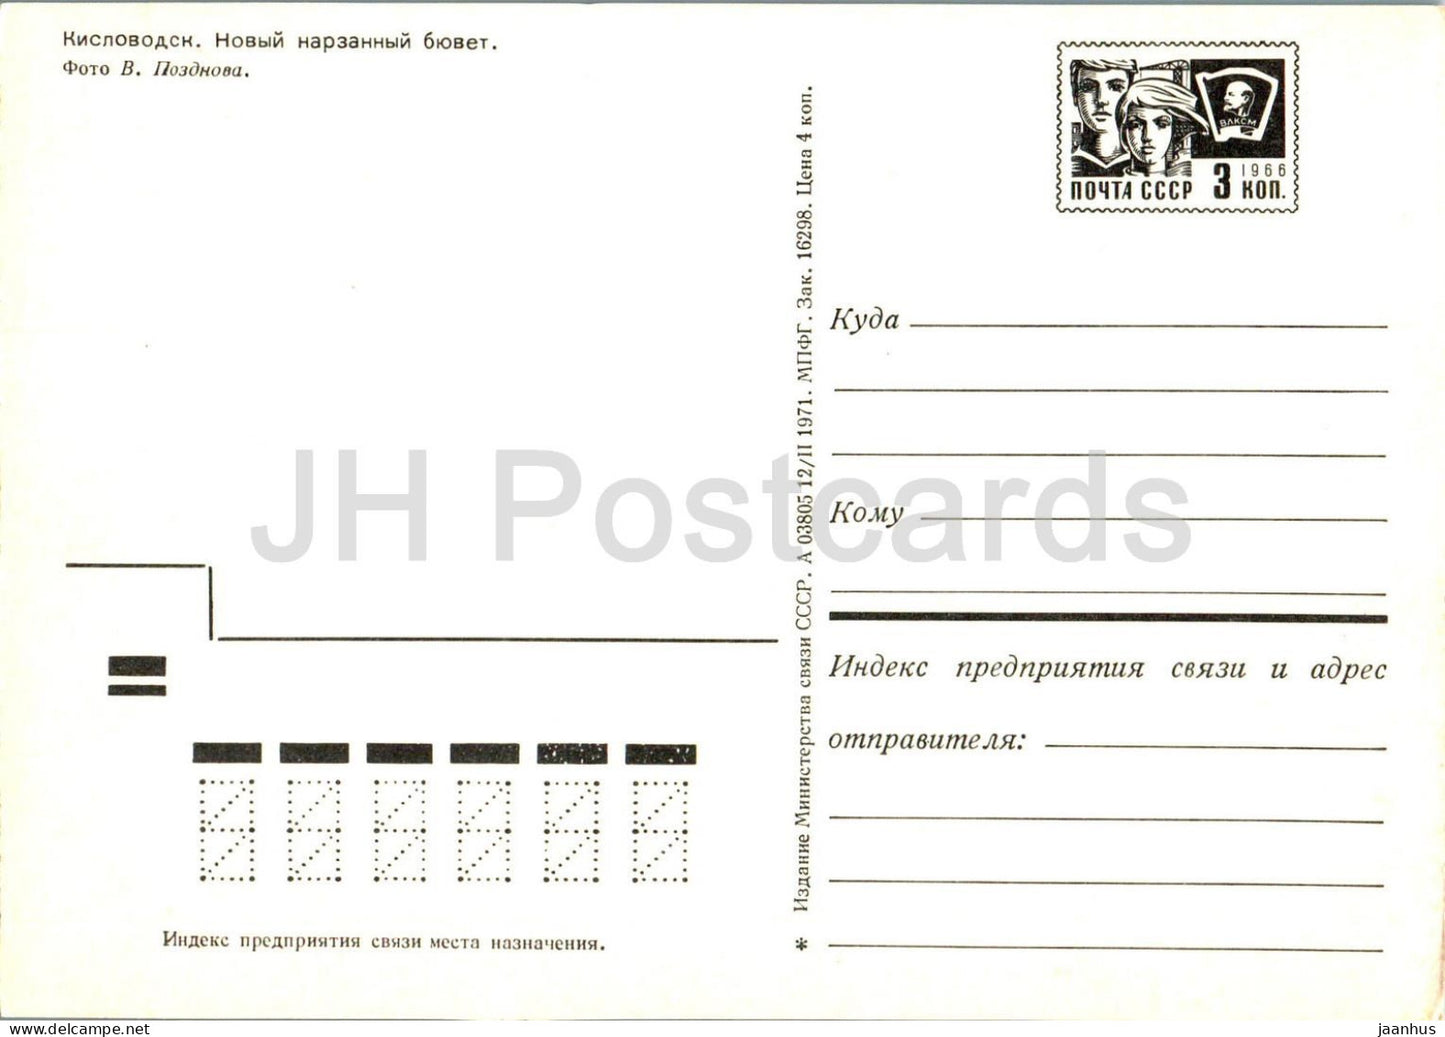 Kislovodsk - Nouvelle salle des pompes Narzan - entier postal - 1971 - Russie URSS - inutilisé 